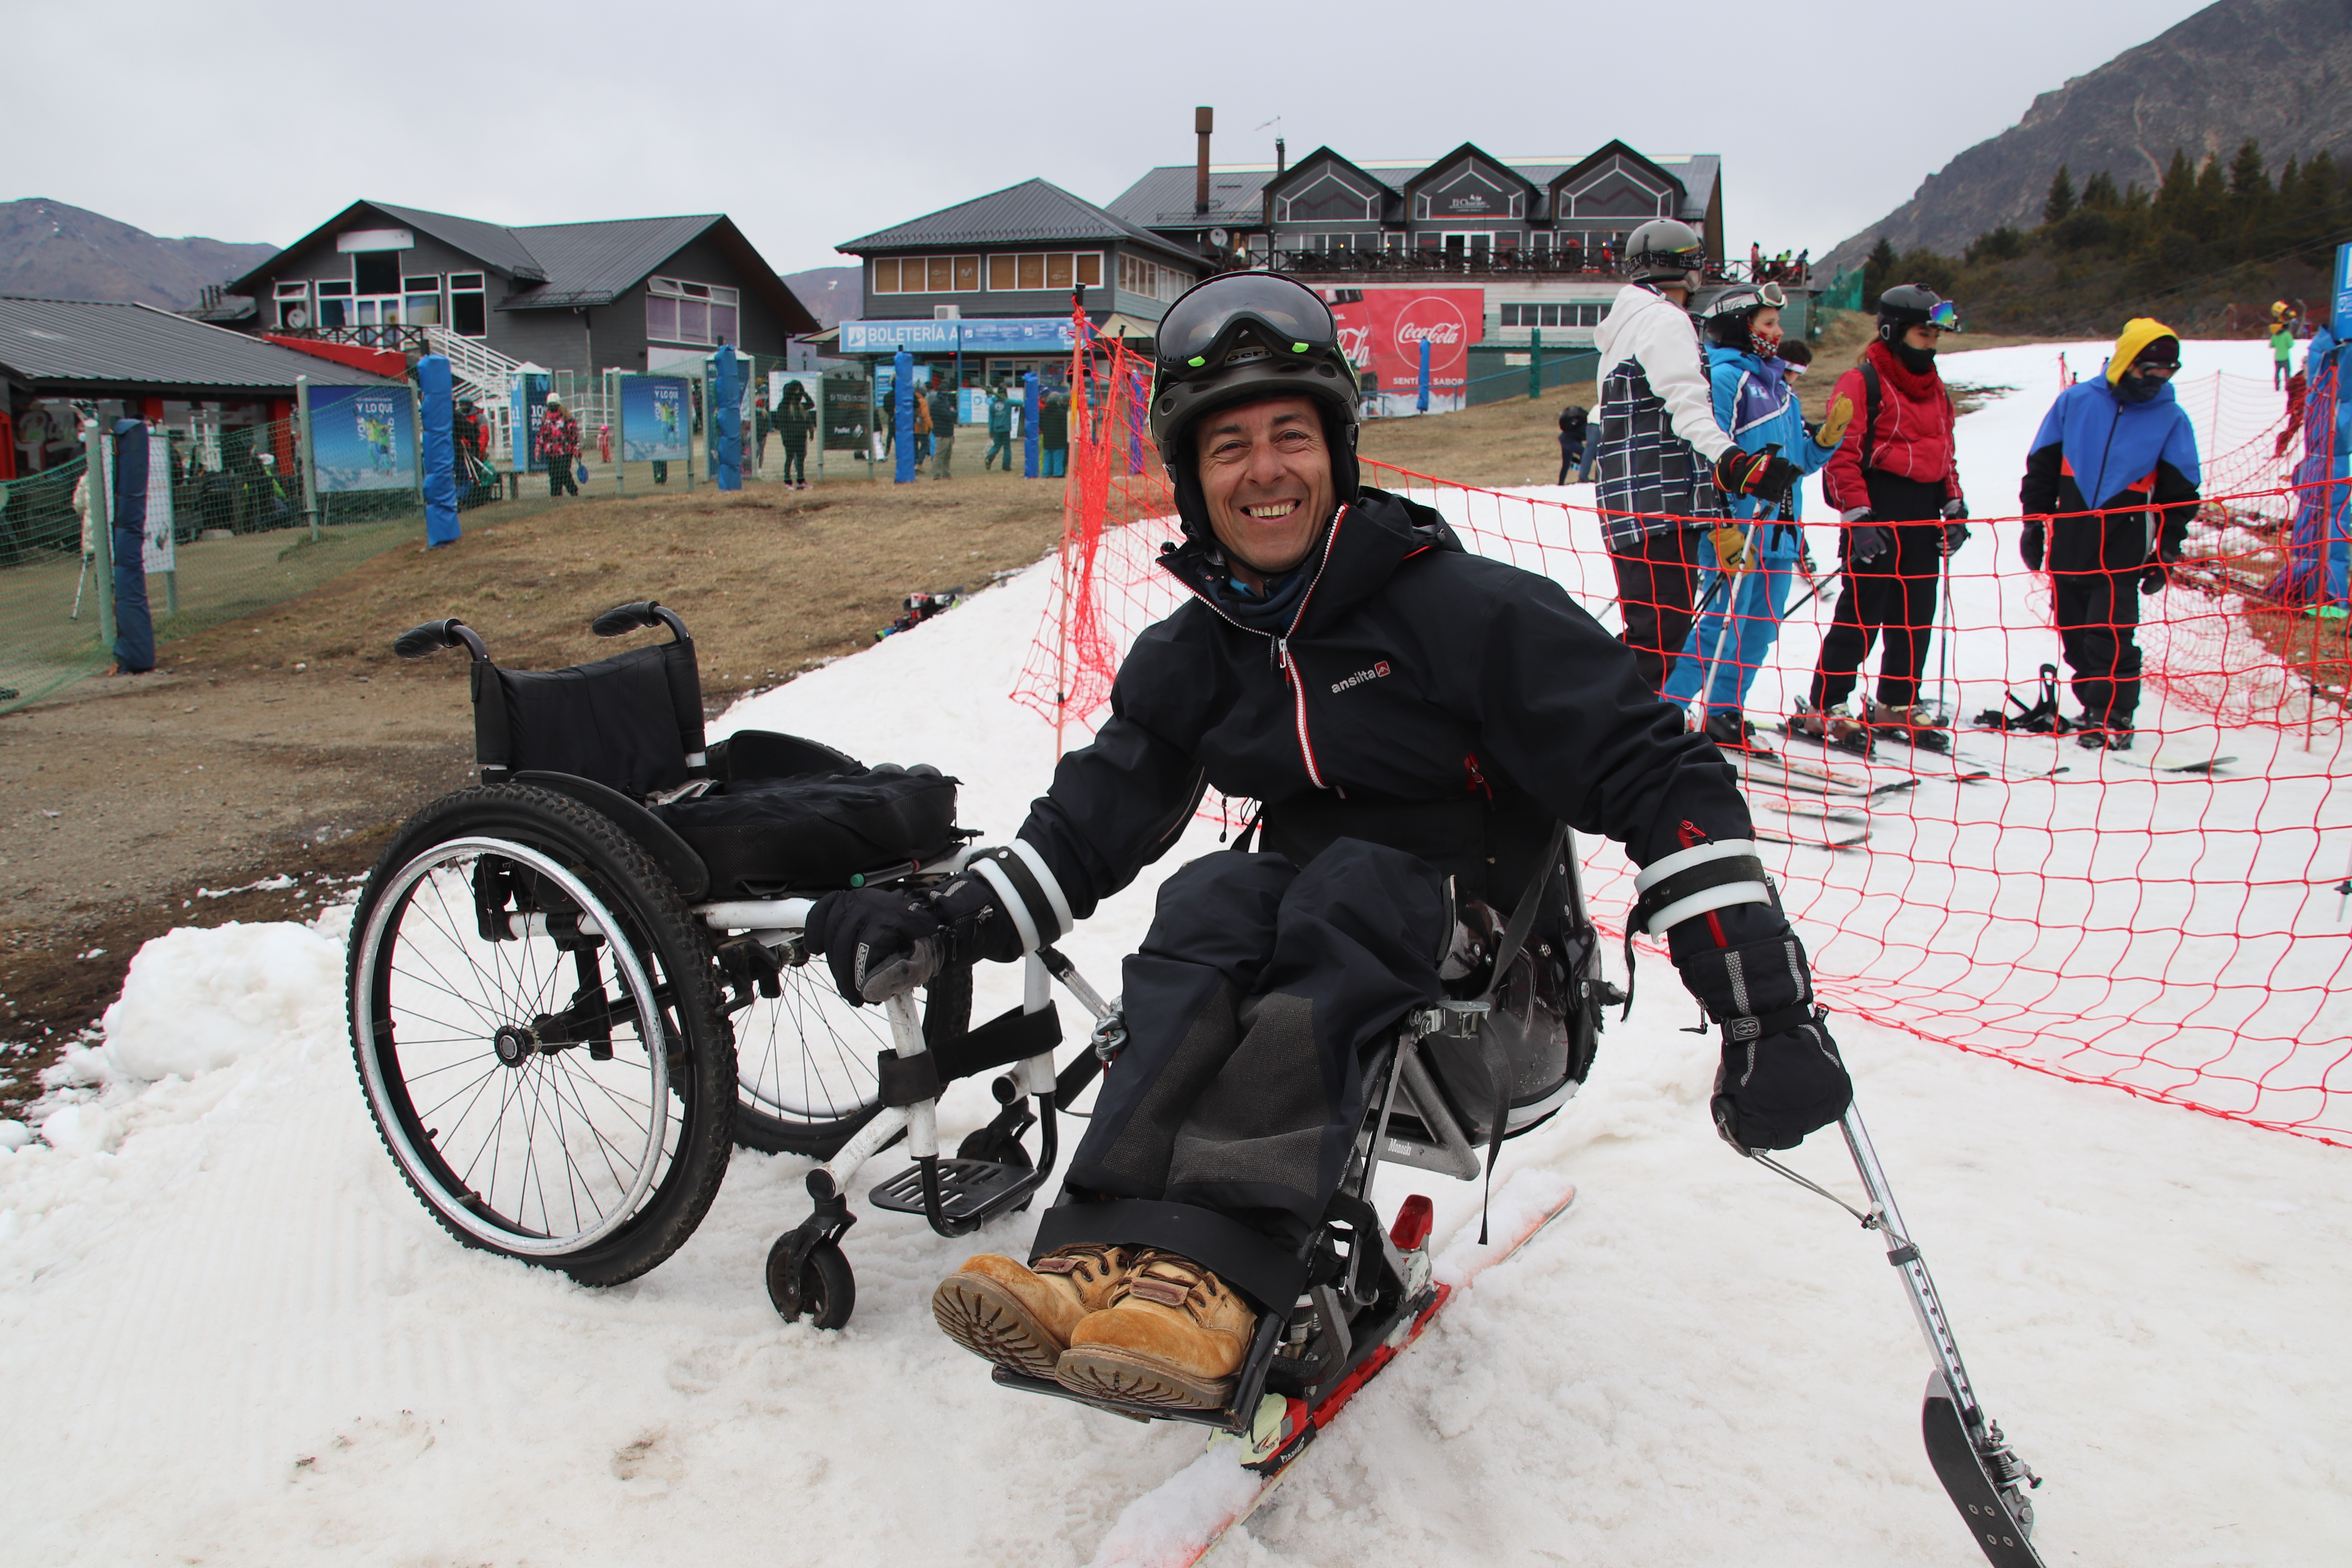 Germán Vega tiene 48 años, es oriundo de La Plata pero barilochense por adopción. En 2005, mientras hacía snowboard, tuvo un accidente que lesionó su médula espinal. Es el primer instructor de esquí en silla de ruedas del mundo